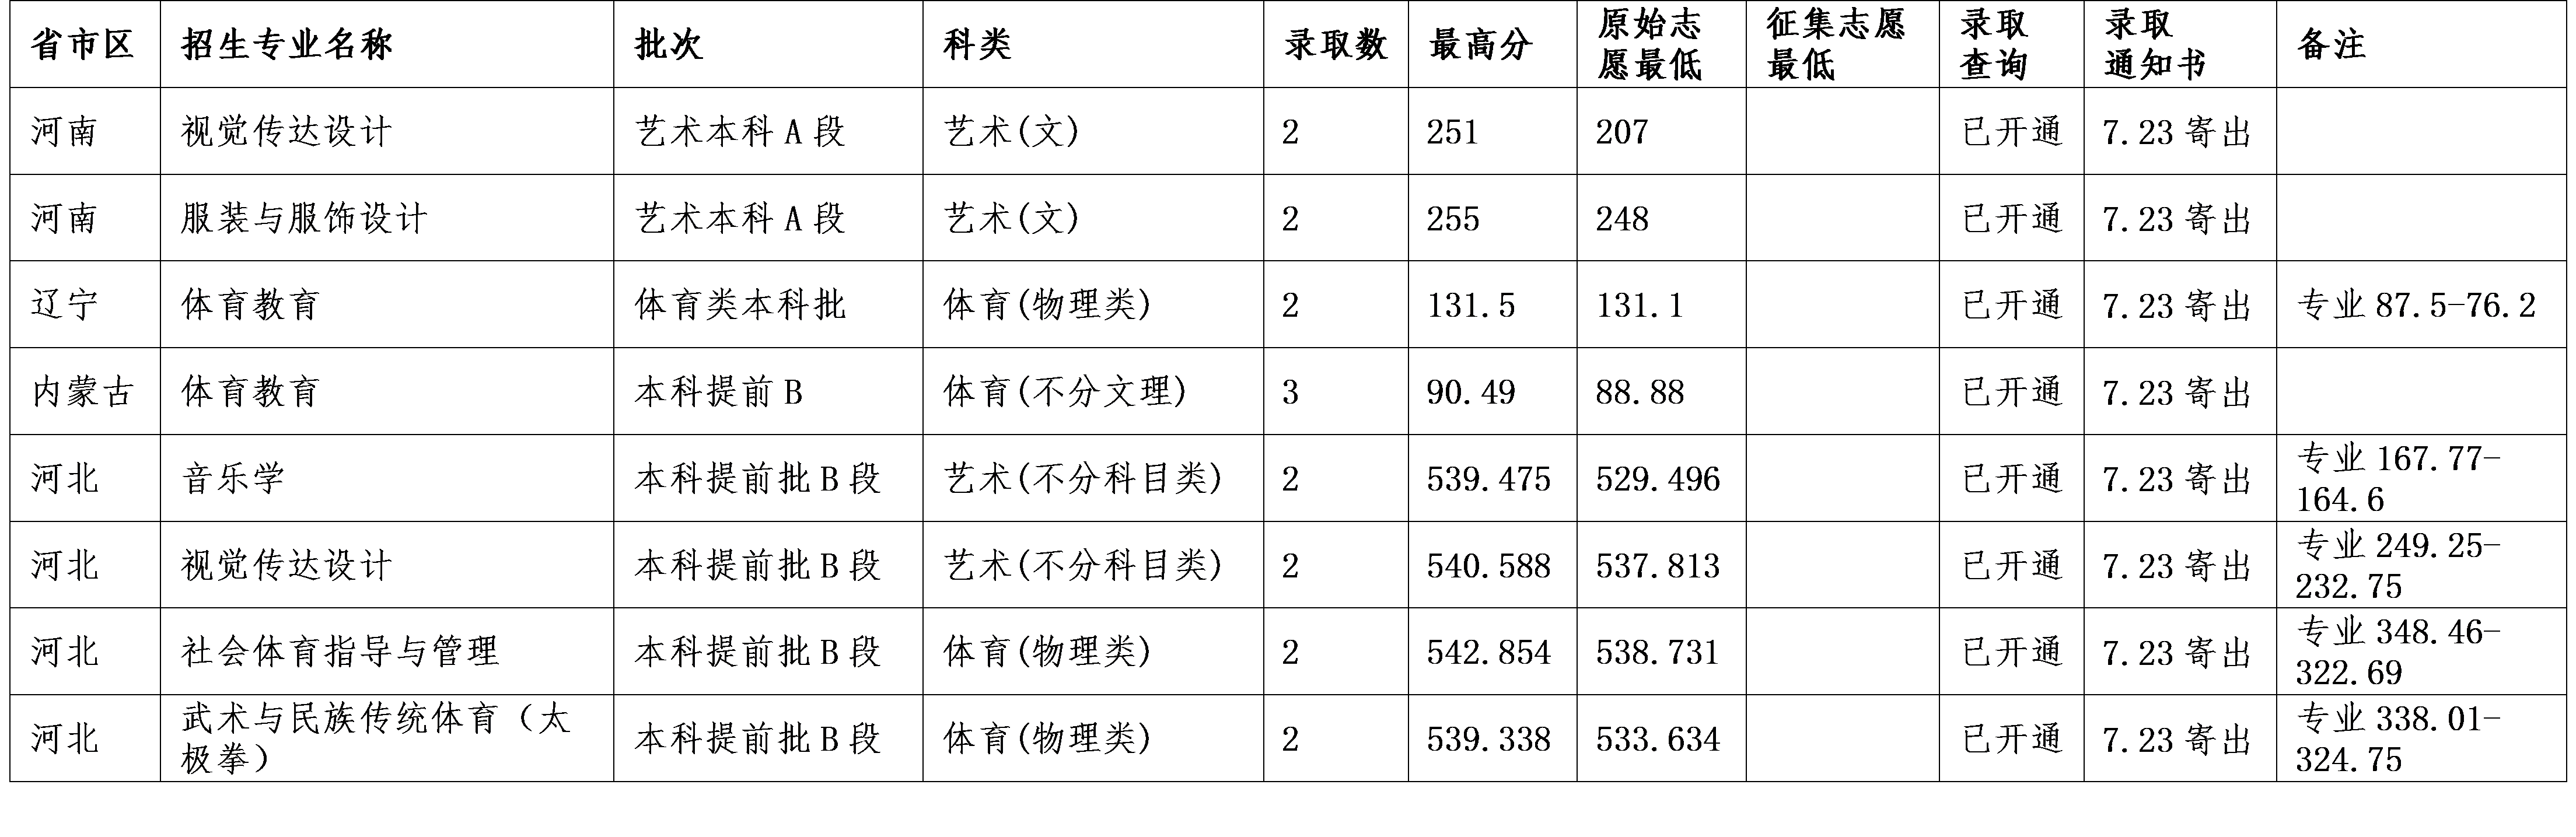 2021云南民族大学艺术类录取分数线汇总(含2019-2020历年)